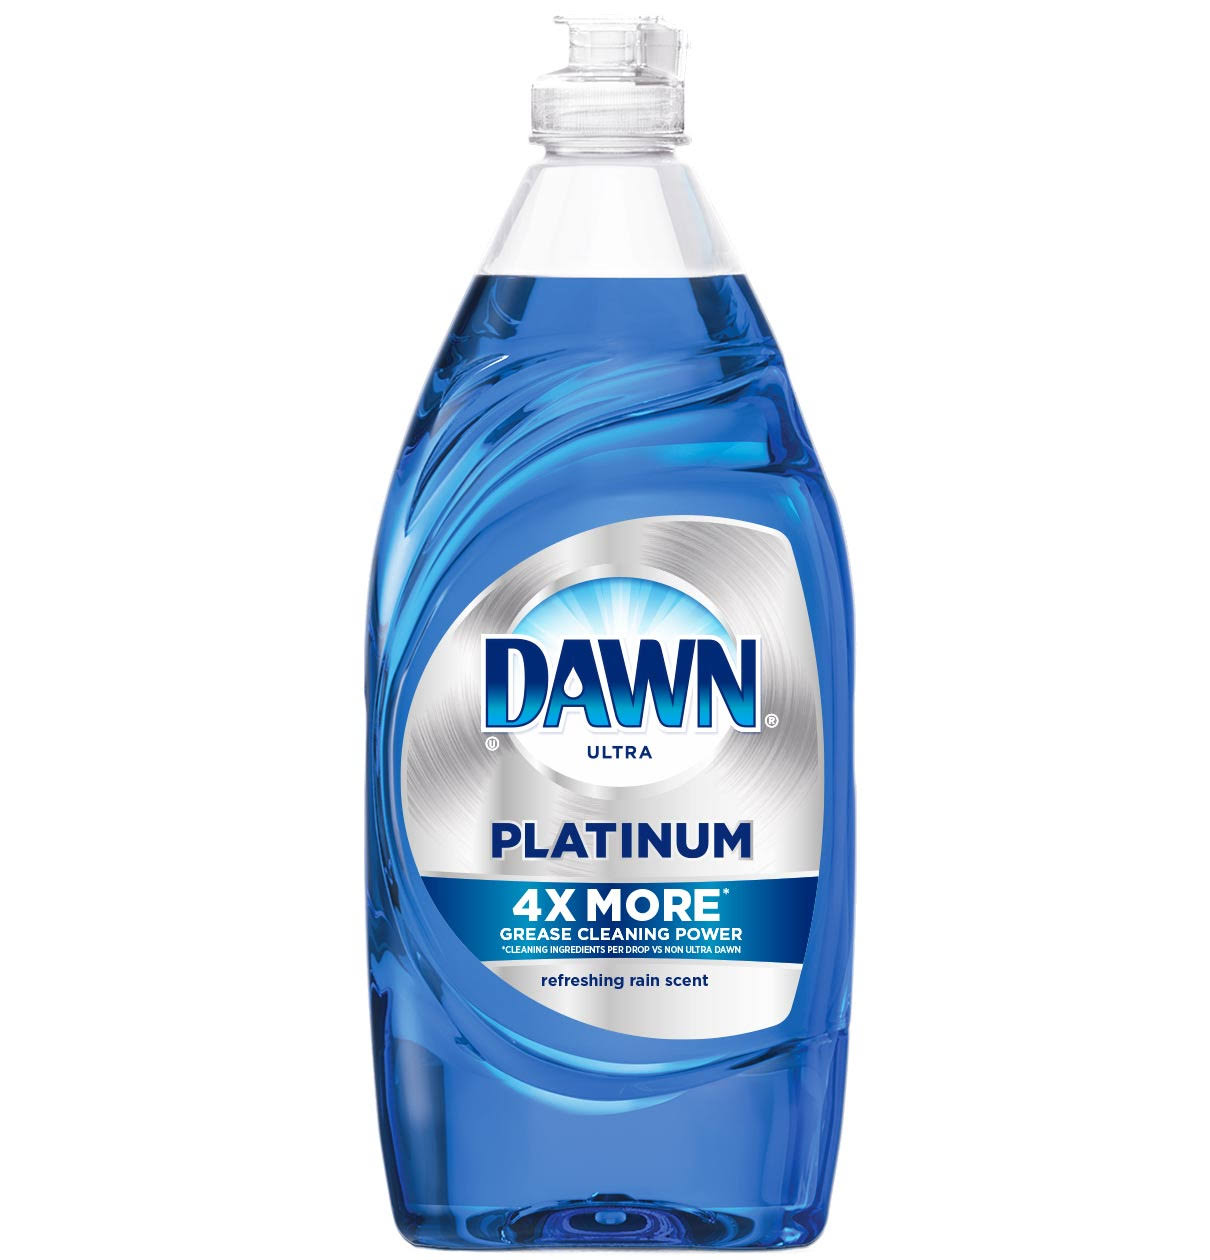 Dawn Platinum Dishwashing Liquid Dish Soap - Refreshing Rain, 479ml